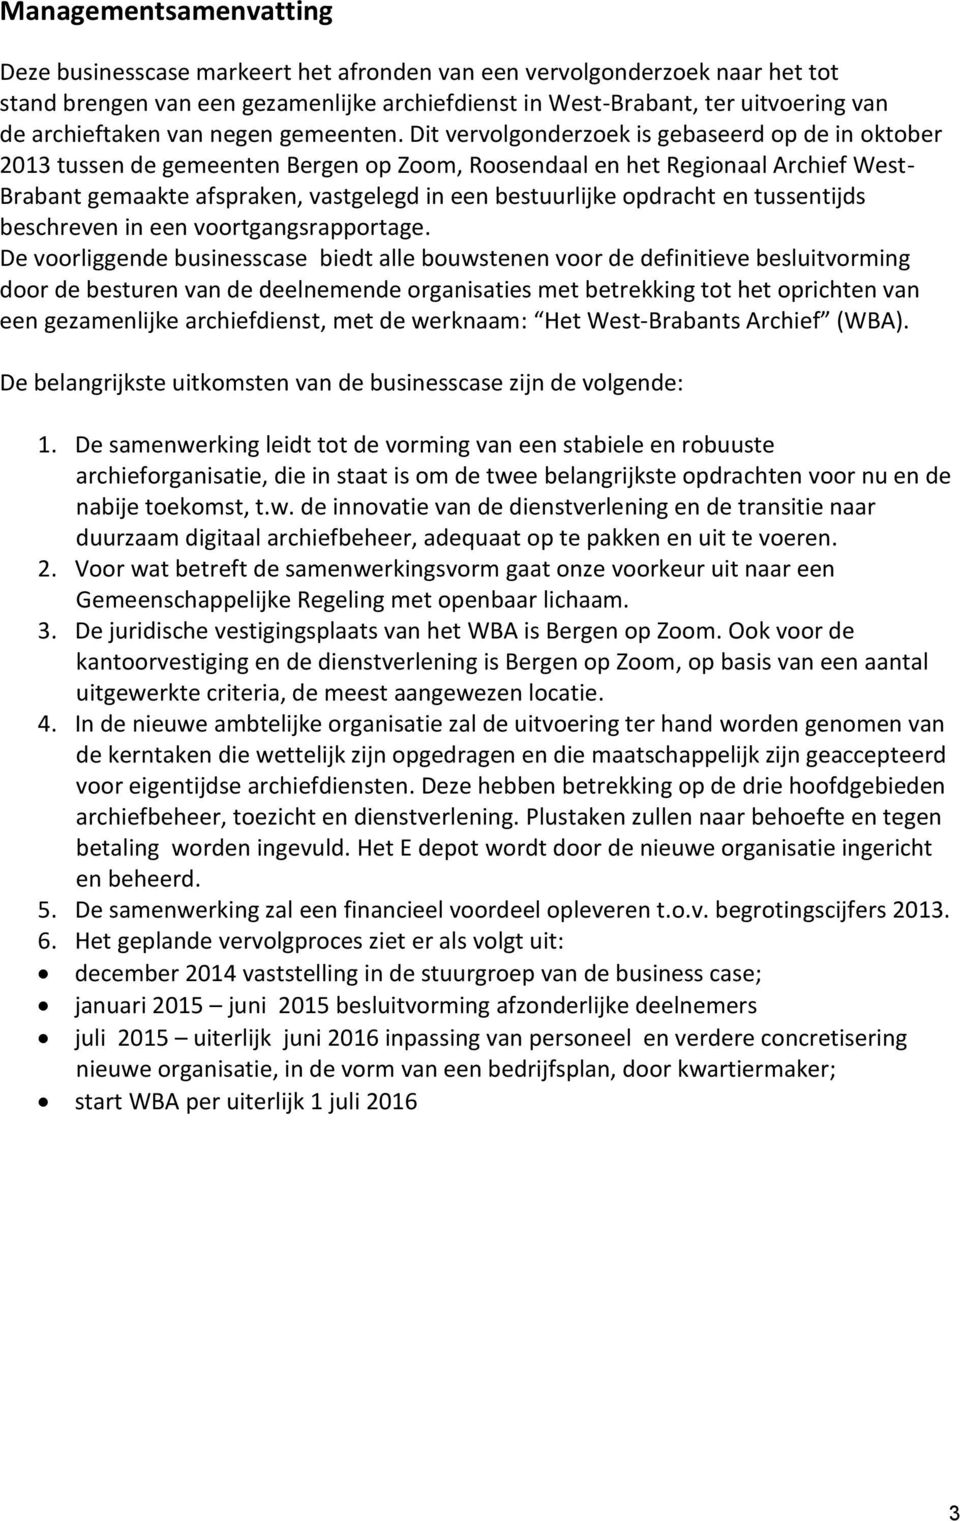 Dit vervolgonderzoek is gebaseerd op de in oktober 2013 tussen de gemeenten Bergen op Zoom, Roosendaal en het Regionaal Archief West- Brabant gemaakte afspraken, vastgelegd in een bestuurlijke